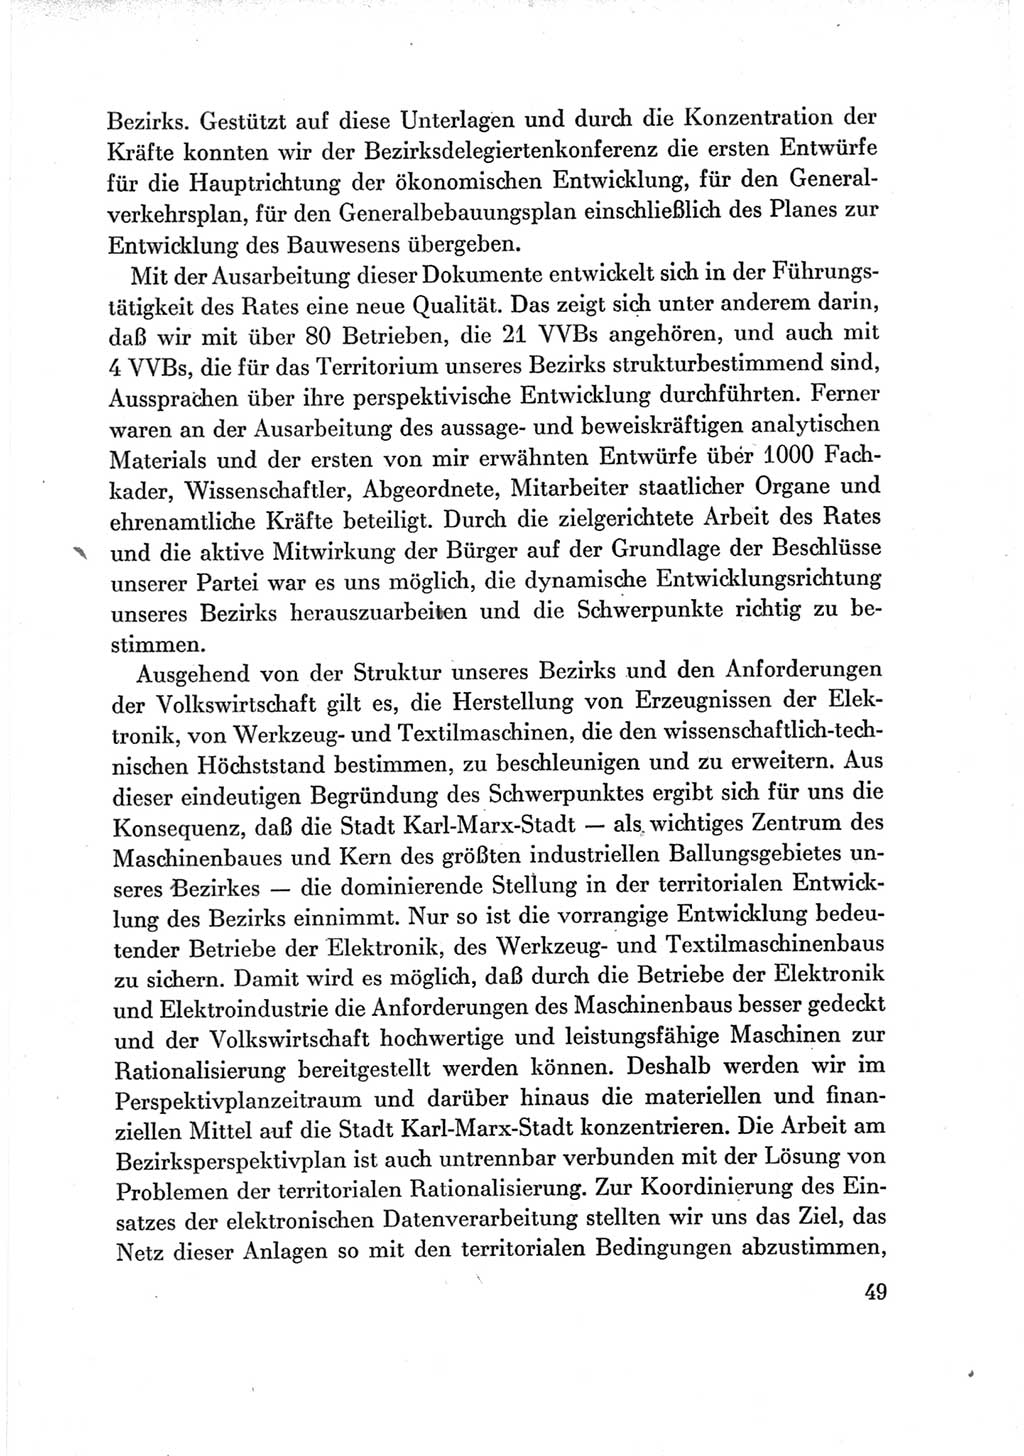 Protokoll der Verhandlungen des Ⅶ. Parteitages der Sozialistischen Einheitspartei Deutschlands (SED) [Deutsche Demokratische Republik (DDR)] 1967, Band Ⅲ, Seite 49 (Prot. Verh. Ⅶ. PT SED DDR 1967, Bd. Ⅲ, S. 49)